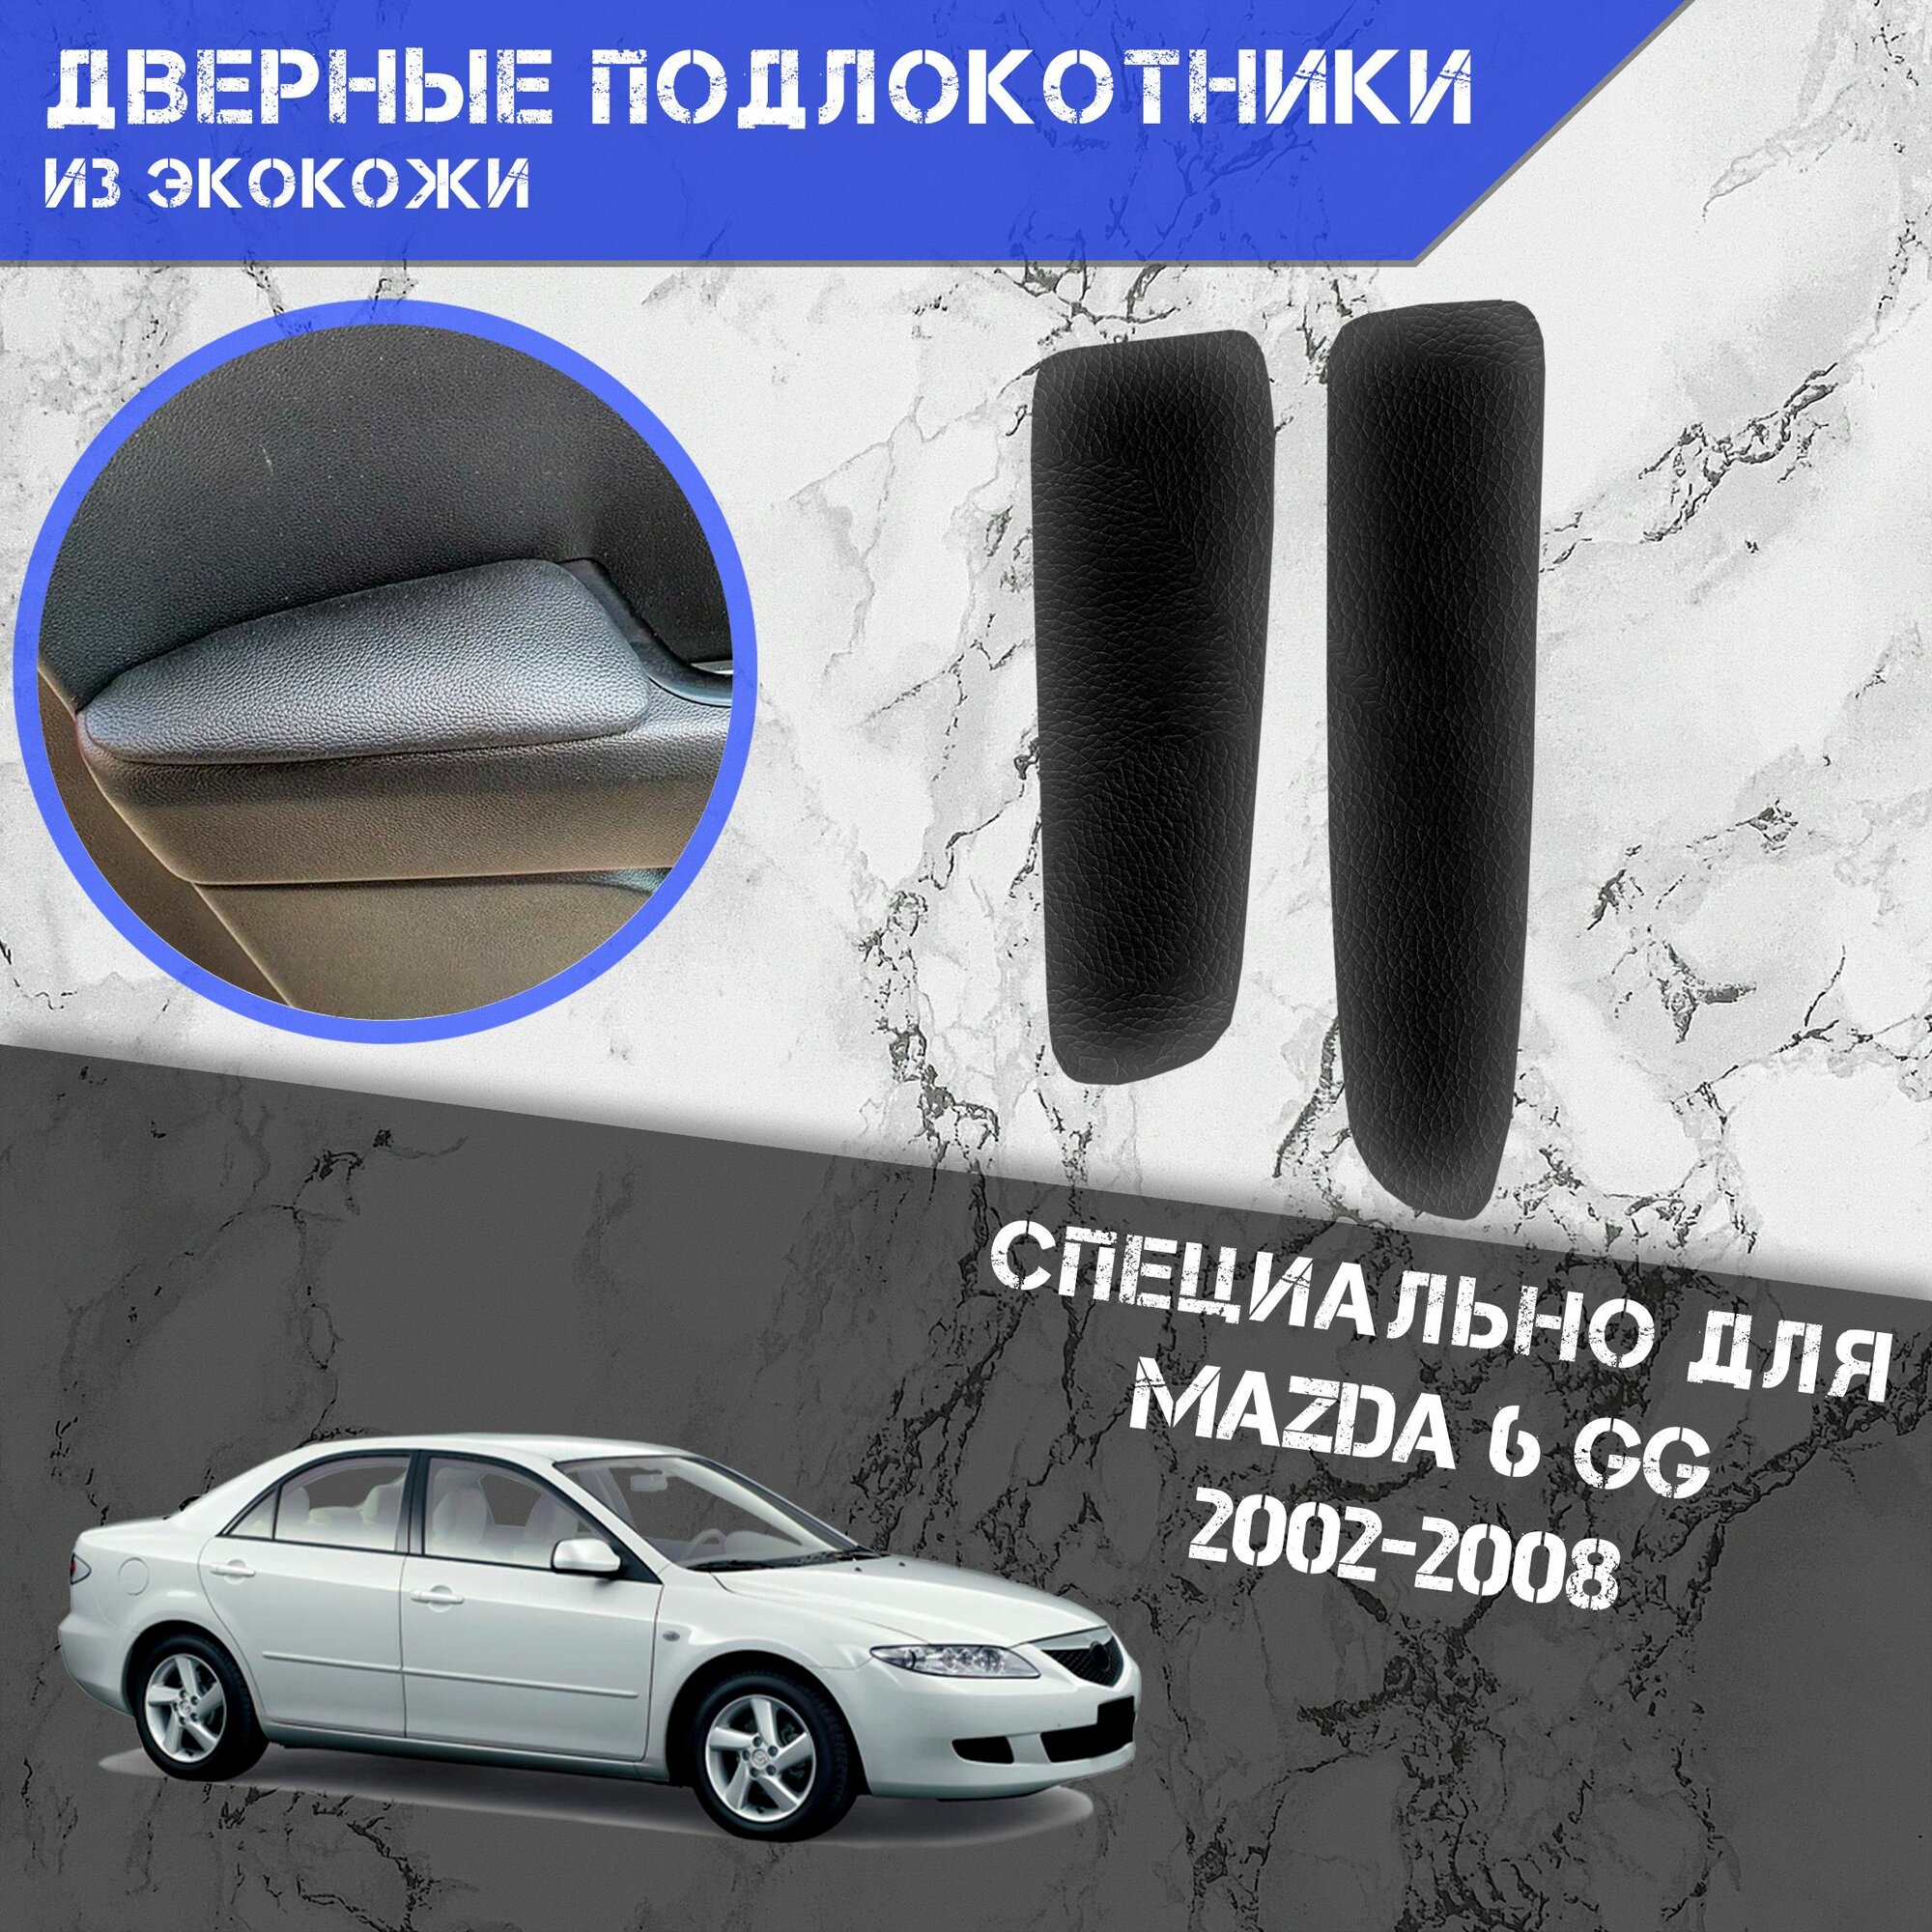 Дверные Подлокотники из экокожи на двери (Мягкие накладки) для Мазда / Mazda 6 GG 2002-2008 (Передние 2 шт) Чёрные